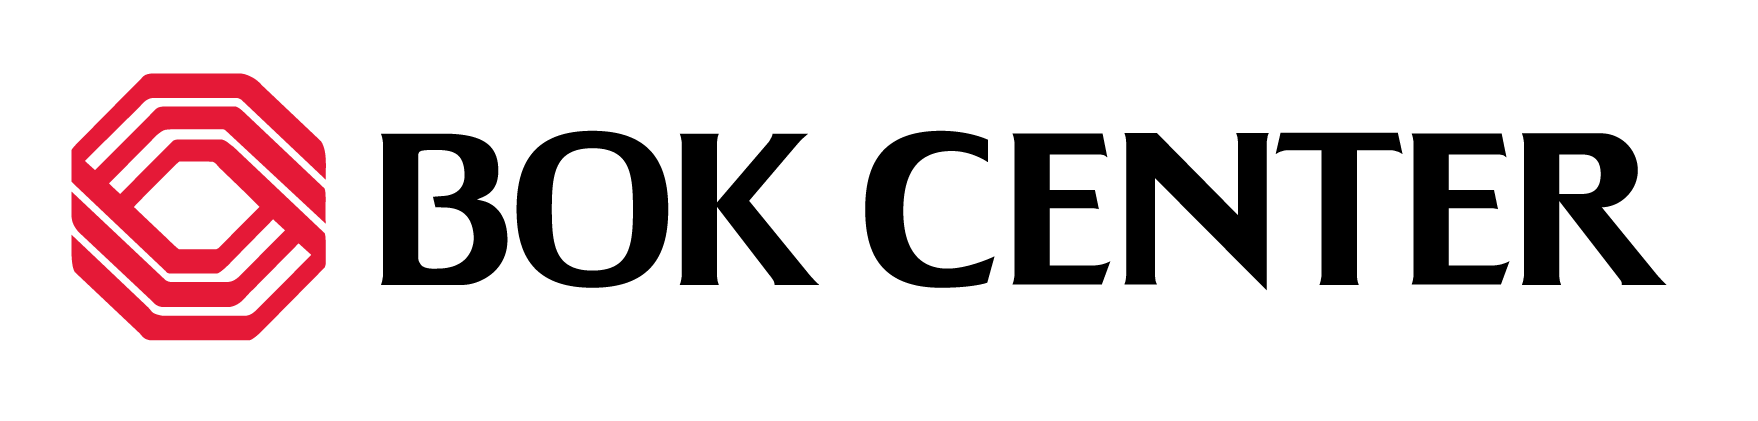 Preorder Logo